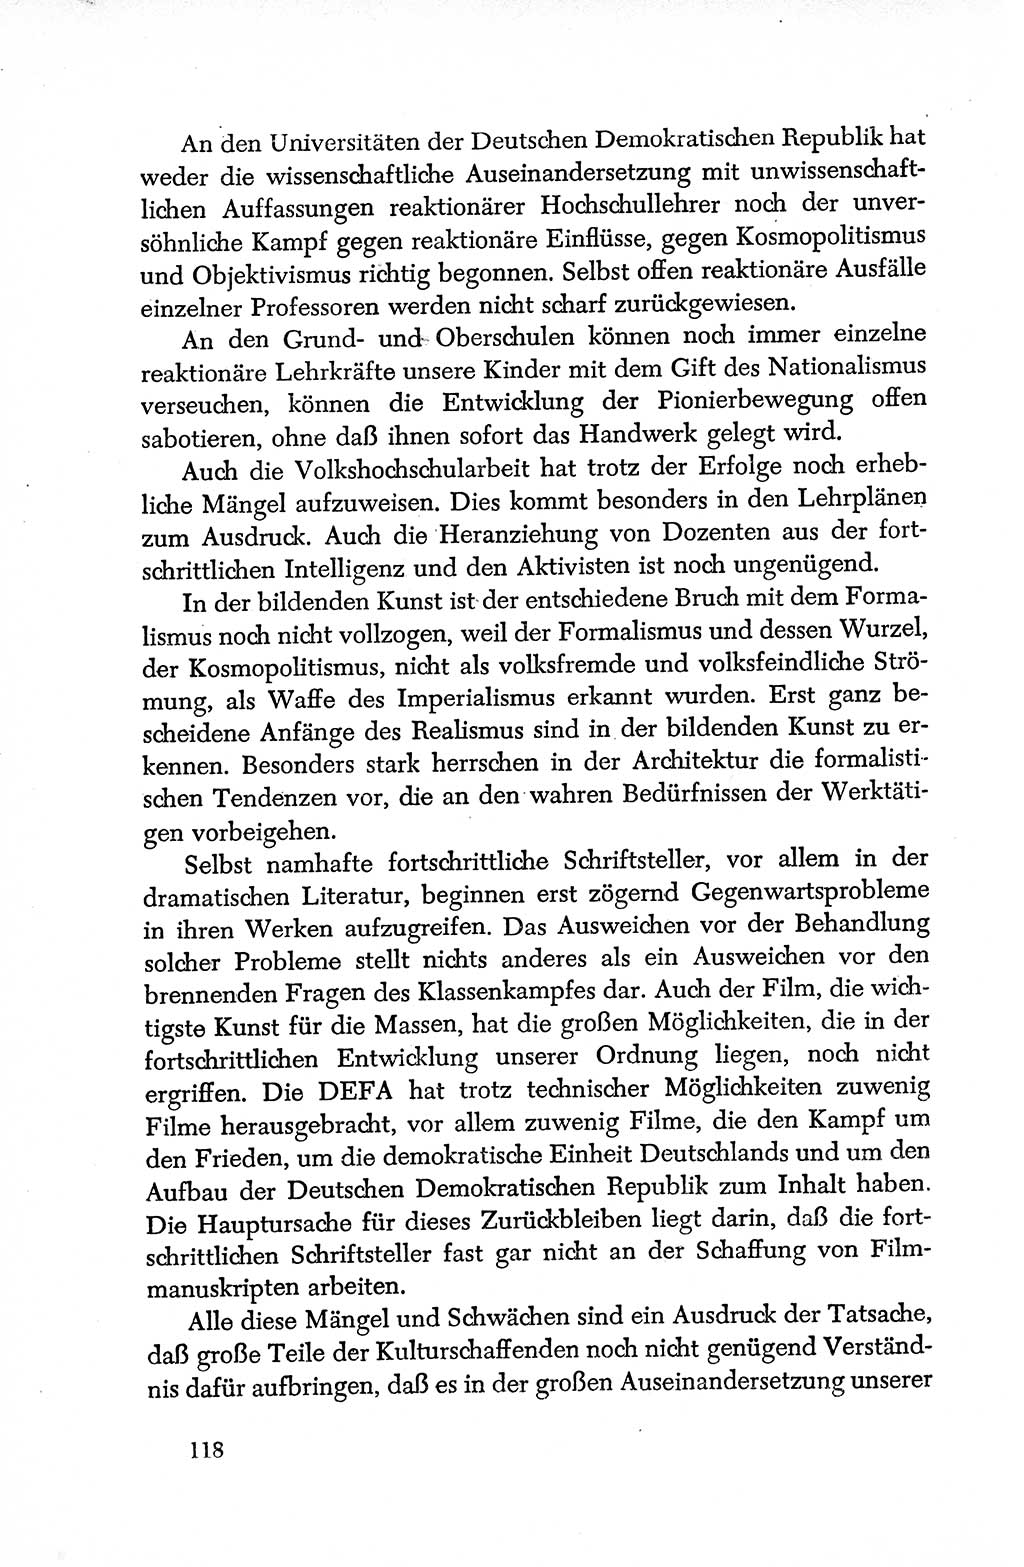 Dokumente der Sozialistischen Einheitspartei Deutschlands (SED) [Deutsche Demokratische Republik (DDR)] 1950-1952, Seite 118 (Dok. SED DDR 1950-1952, S. 118)